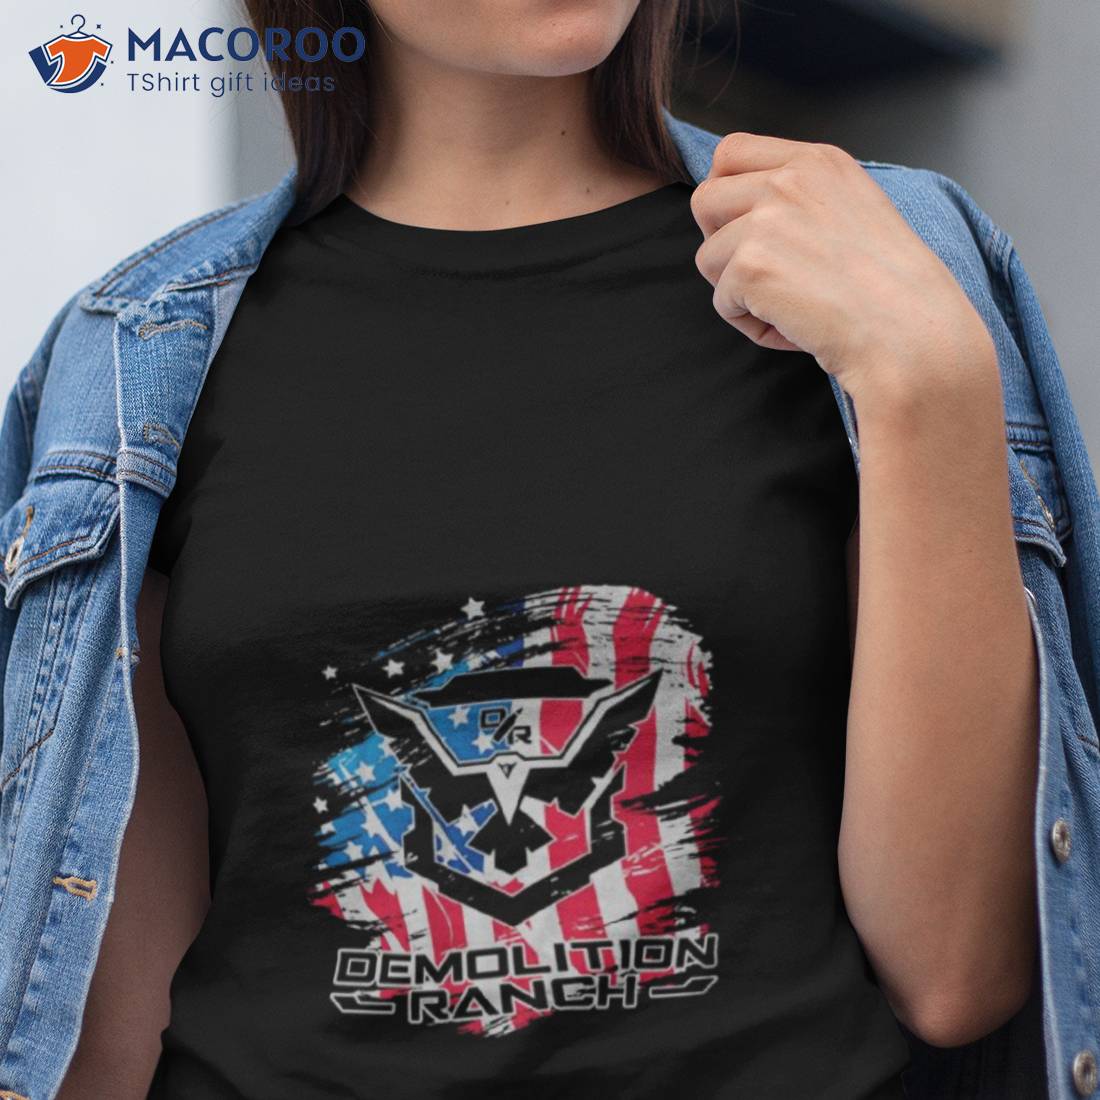 Demolition Merica American Flag Shirt Tshirt